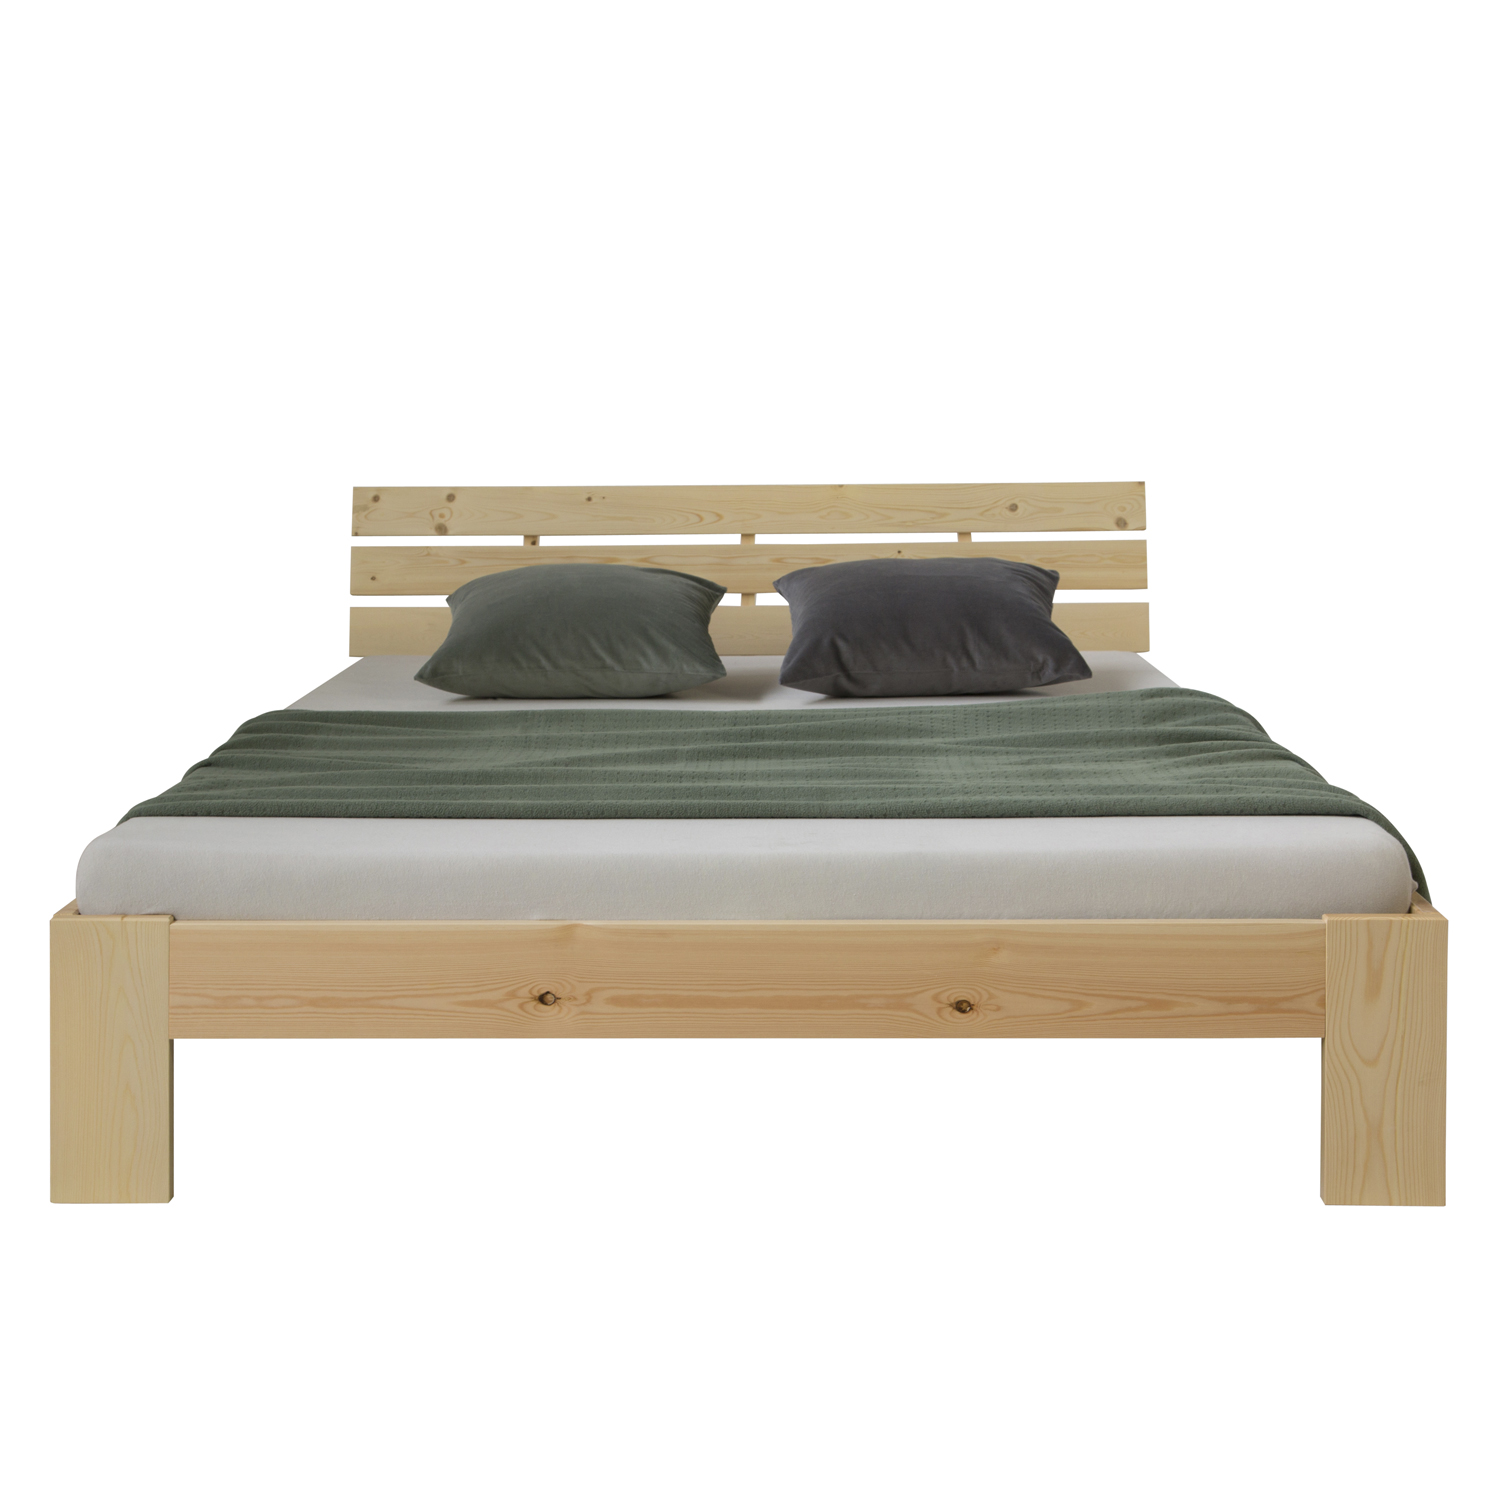 Doppelbett mit Matratze 140x200 cm Holzbett Futonbett Natur Kiefer Bett Bettgestell Massivholz